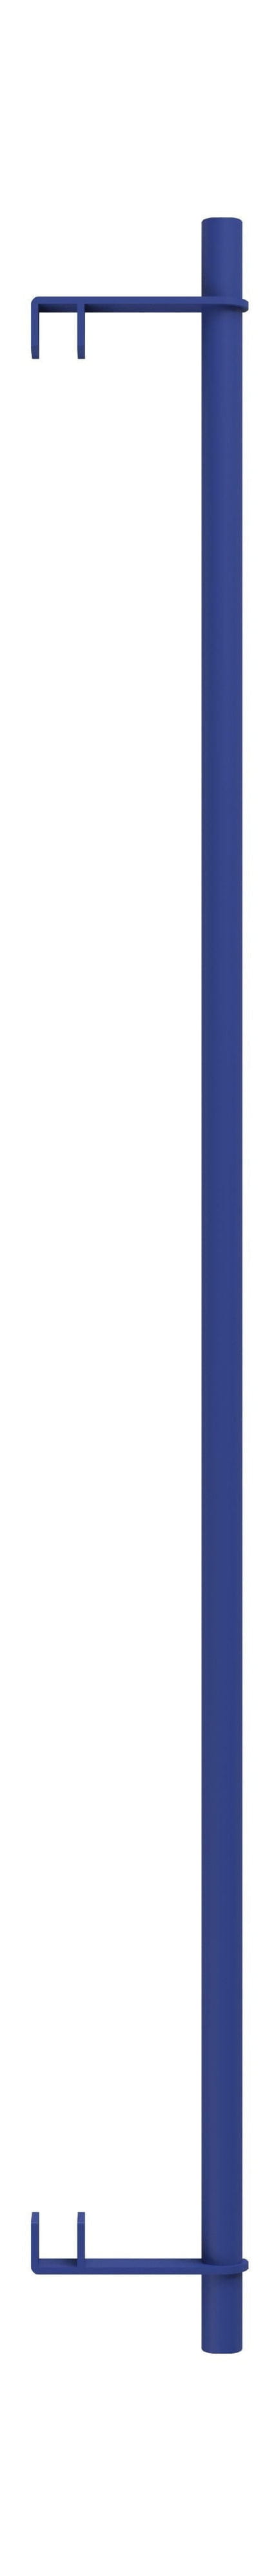 Système d'étagère MOEBE / SERPLIQUE MUR BAR 85 cm, Bleu profond